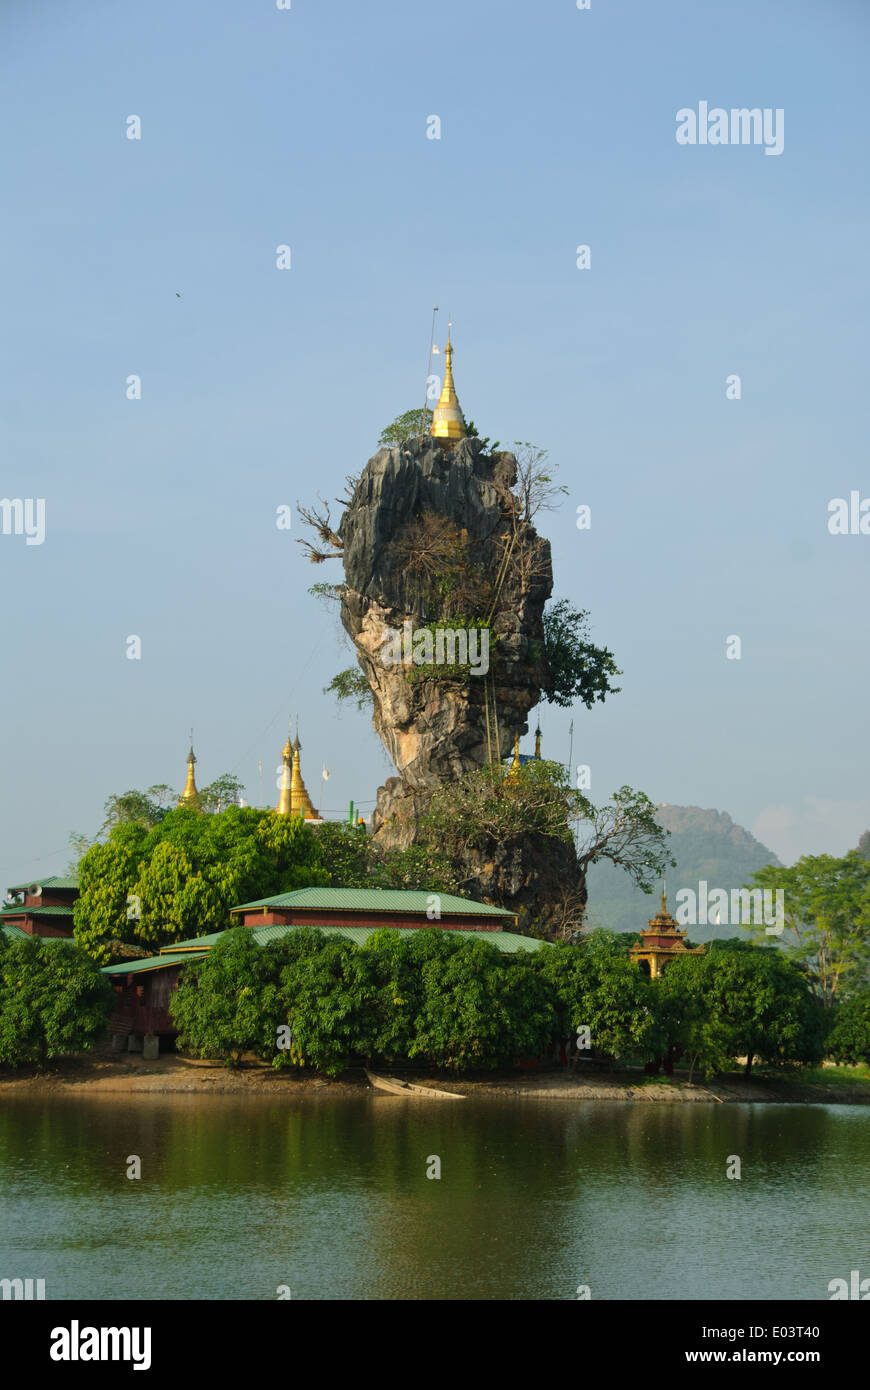 Pagodas on a tall finger rock at Kyauk Kalap, Hpa-an. Stock Photo